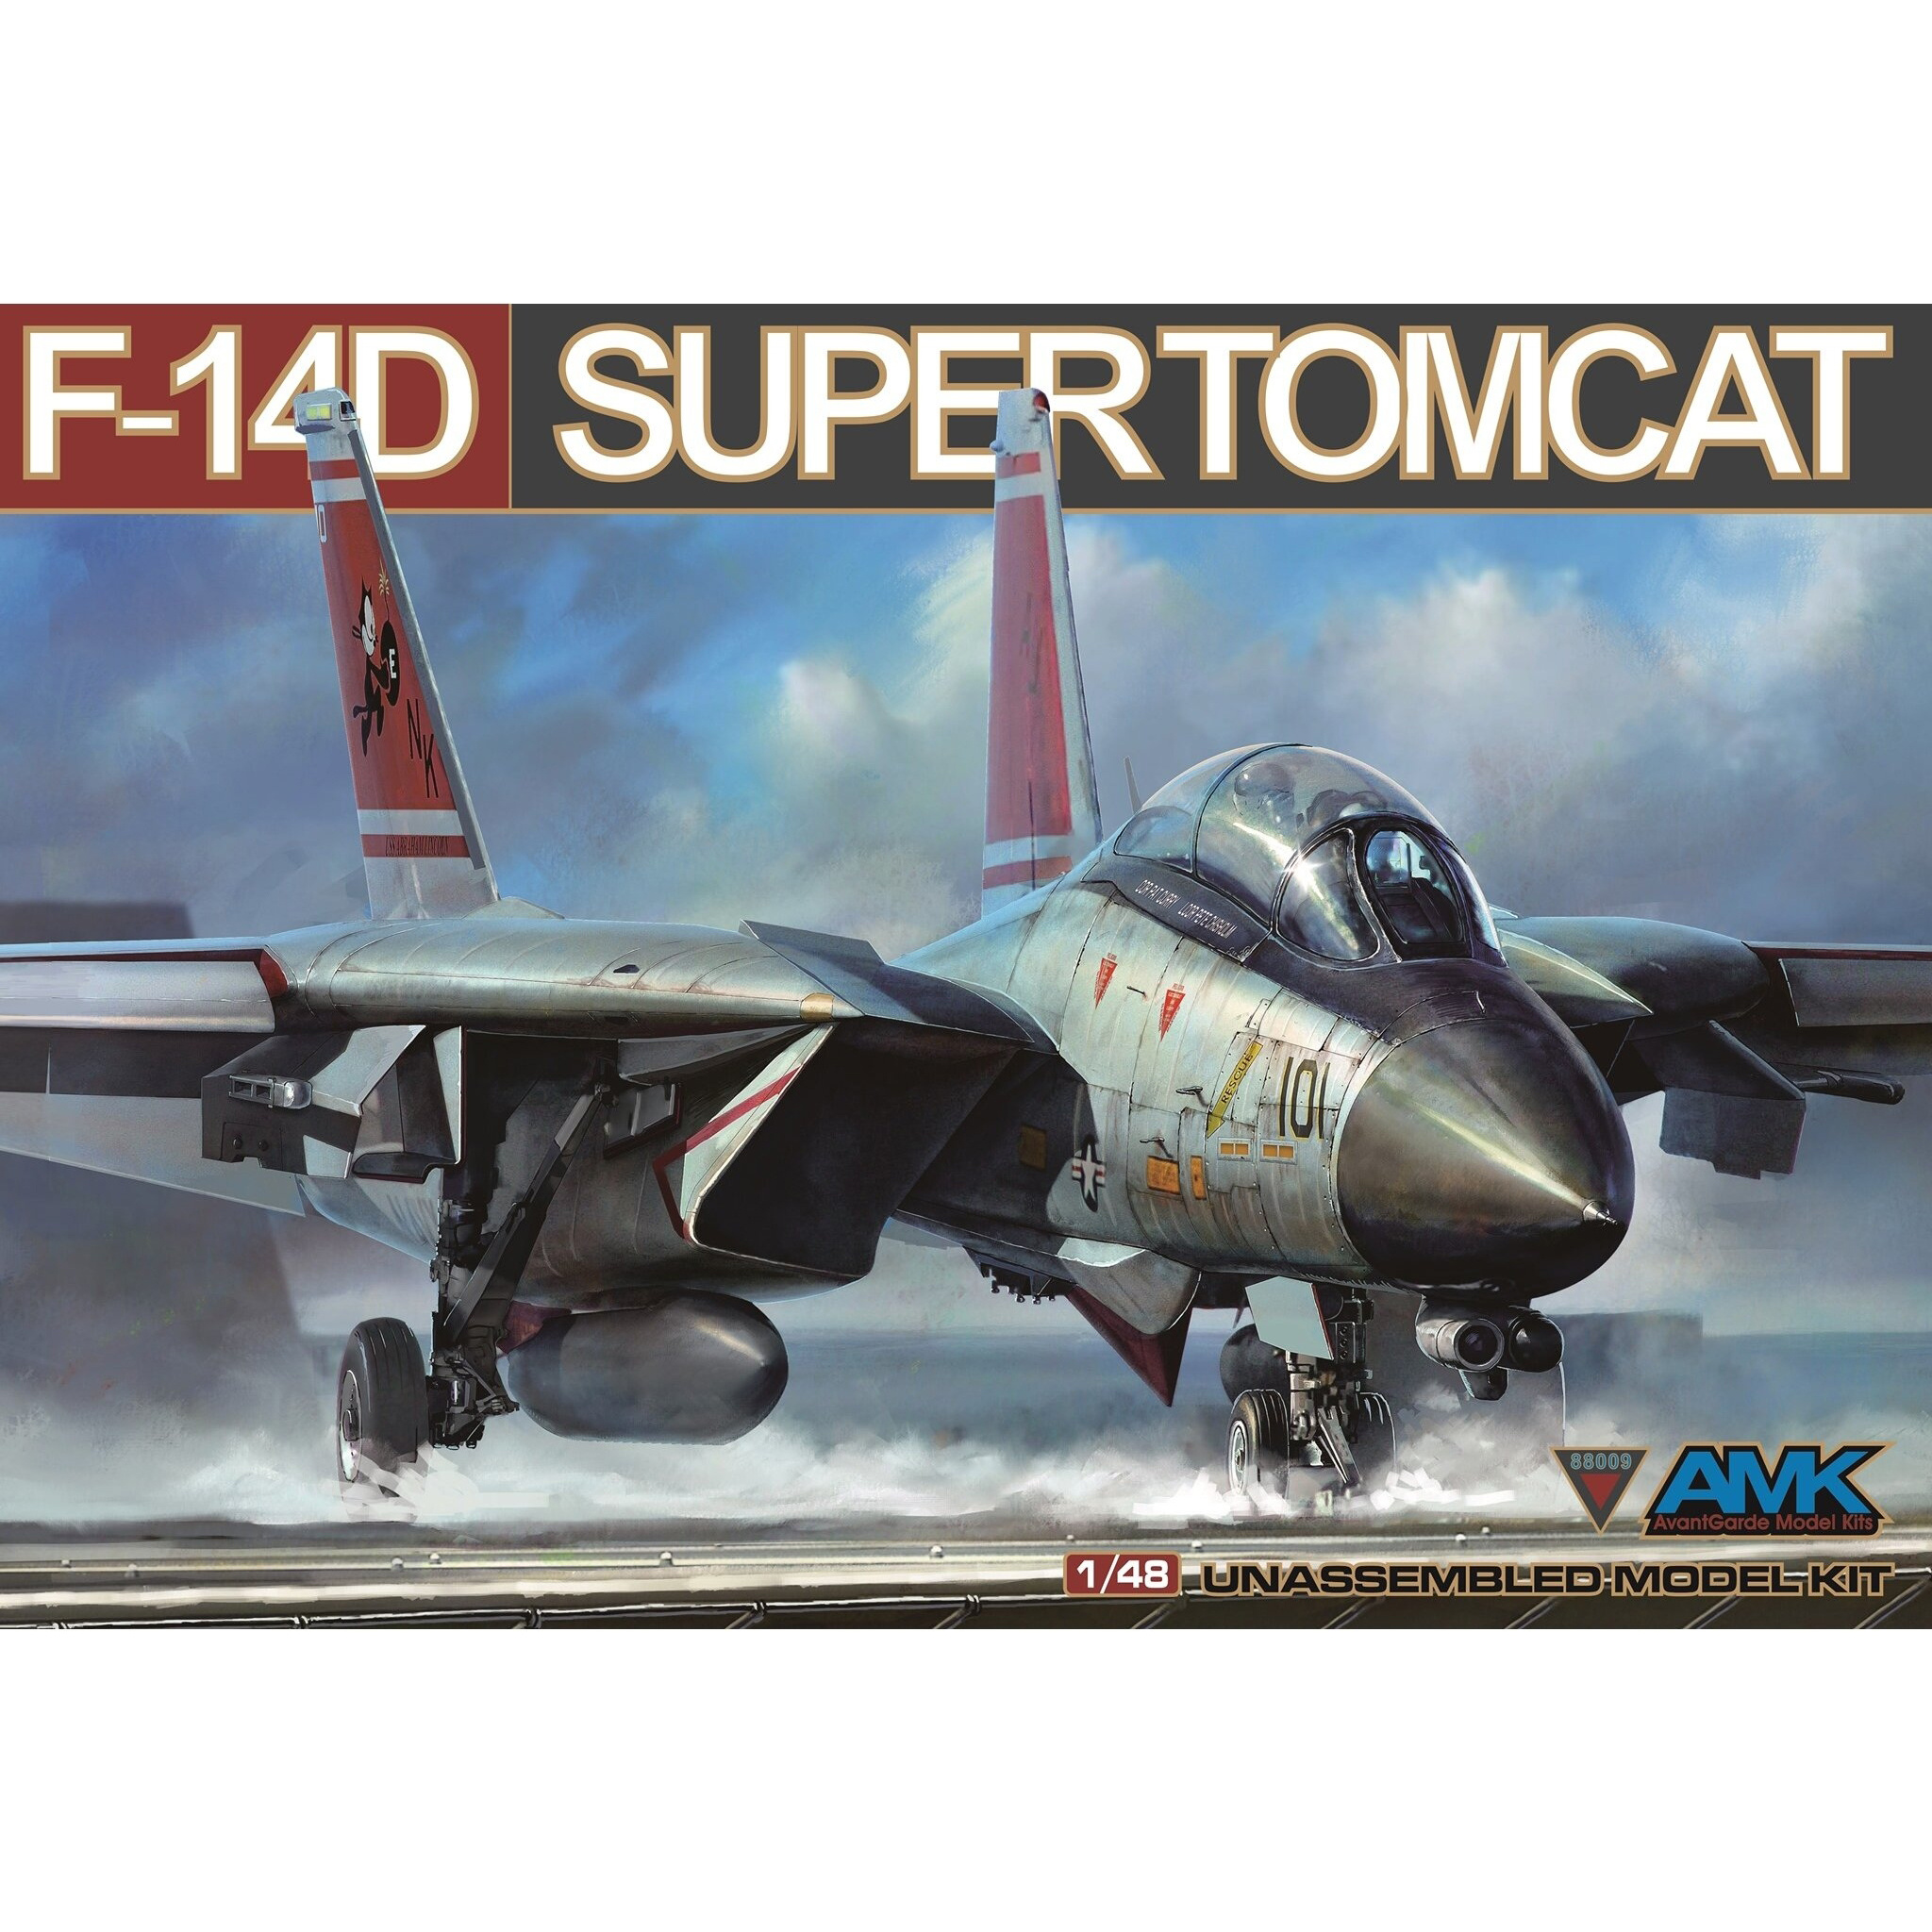 88009 AMK 1/48 Палубный истребитель-перехватчик F-14D Super Tomcat